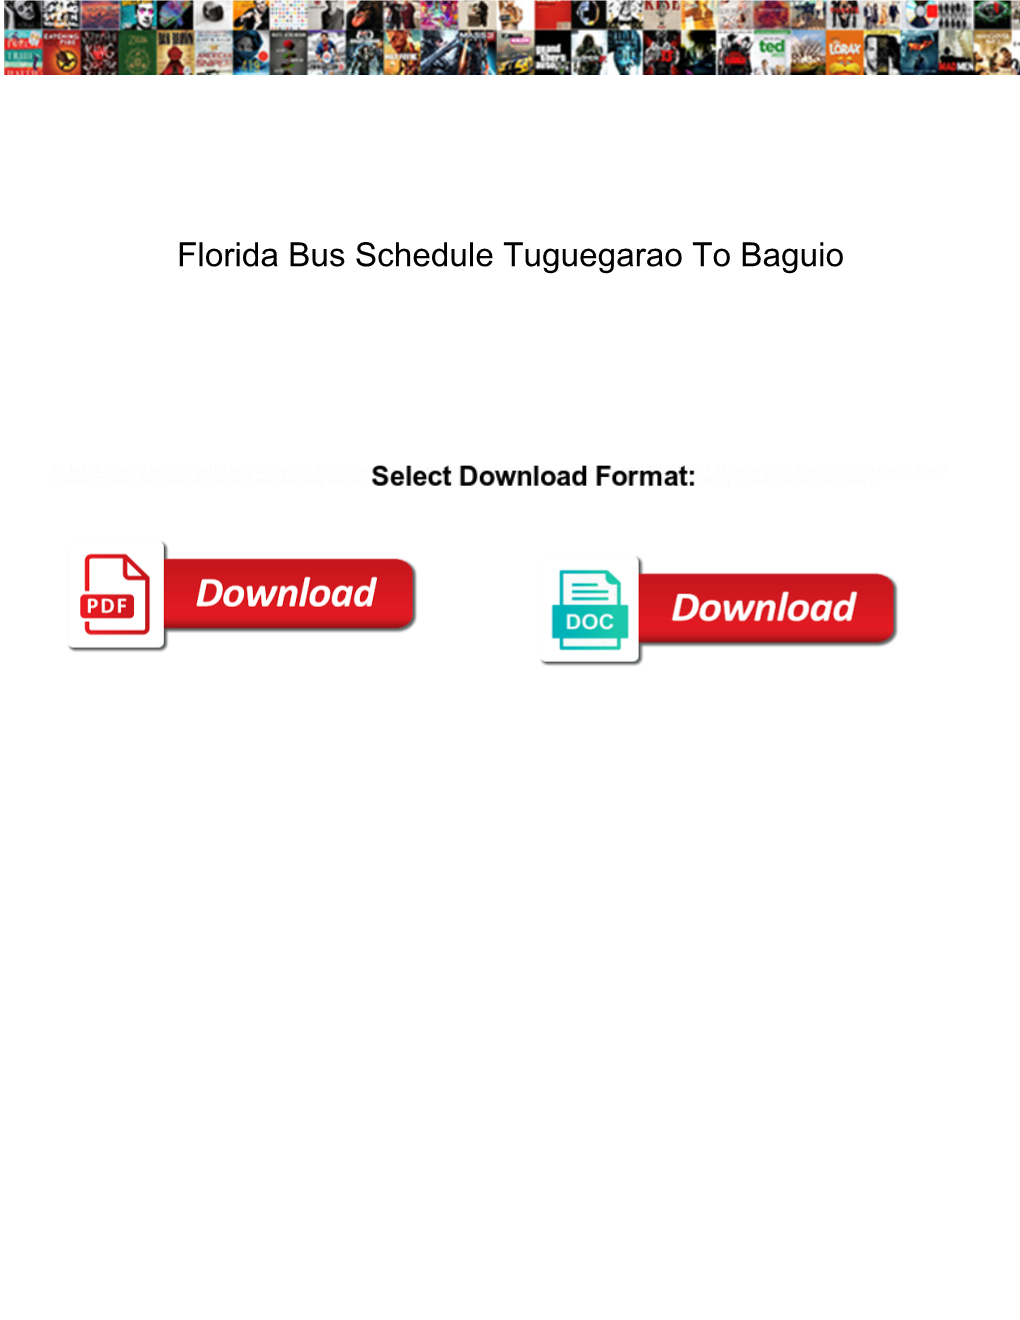 Florida Bus Schedule Tuguegarao to Baguio